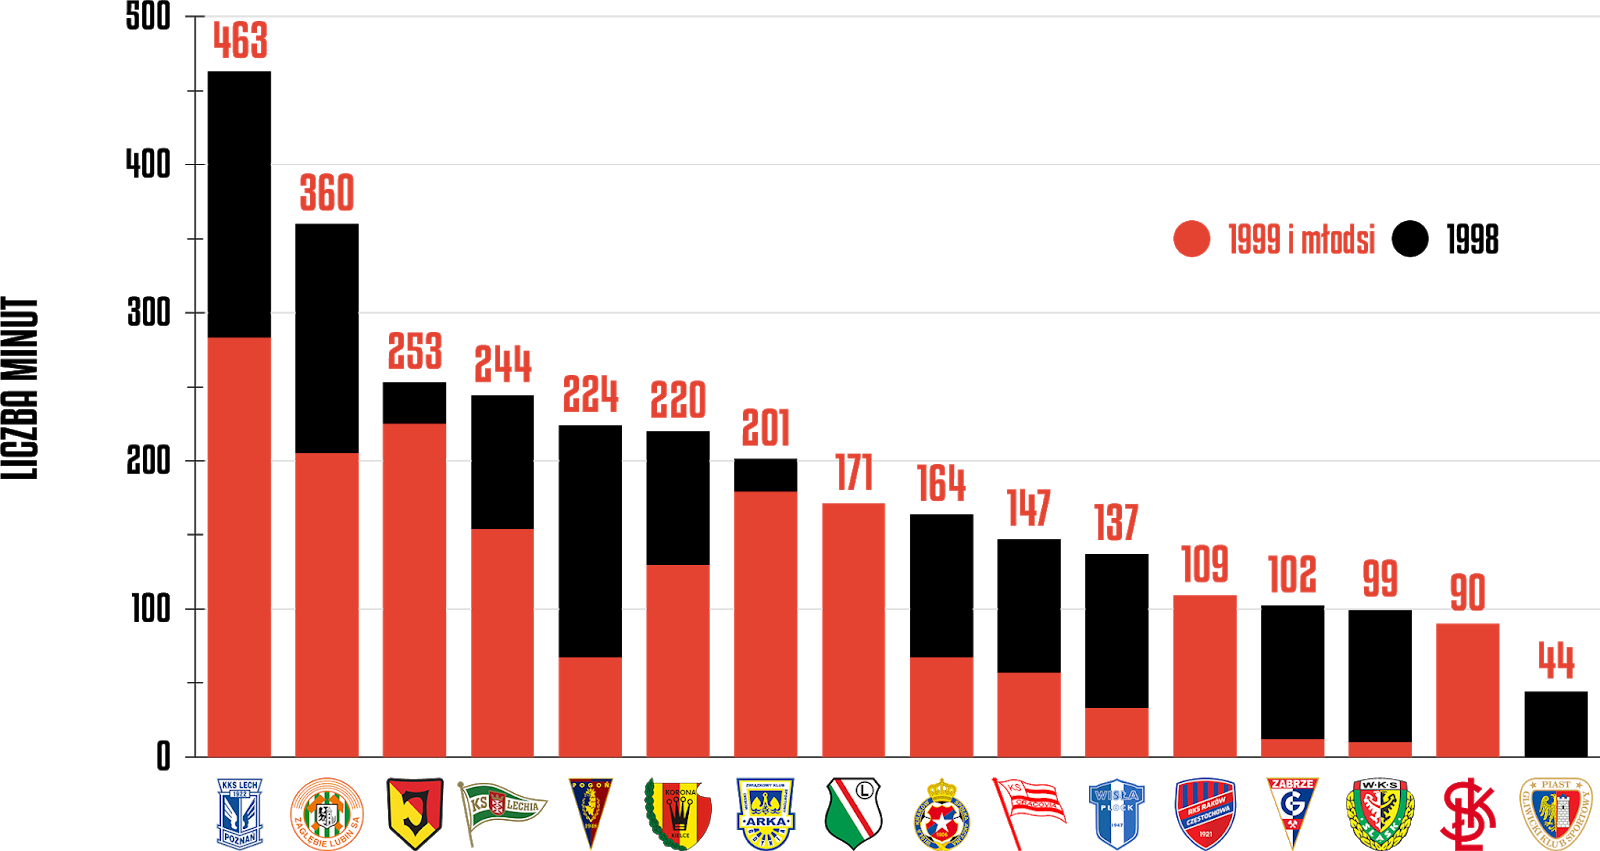 Klasyfikacja klubów pod względem rozegranych minut przez młodzieżowców w 35. kolejce PKO Ekstraklasy<br><br>Źródło: Opracowanie własne na podstawie ekstrastats.pl<br><br>graf. Bartosz Urban